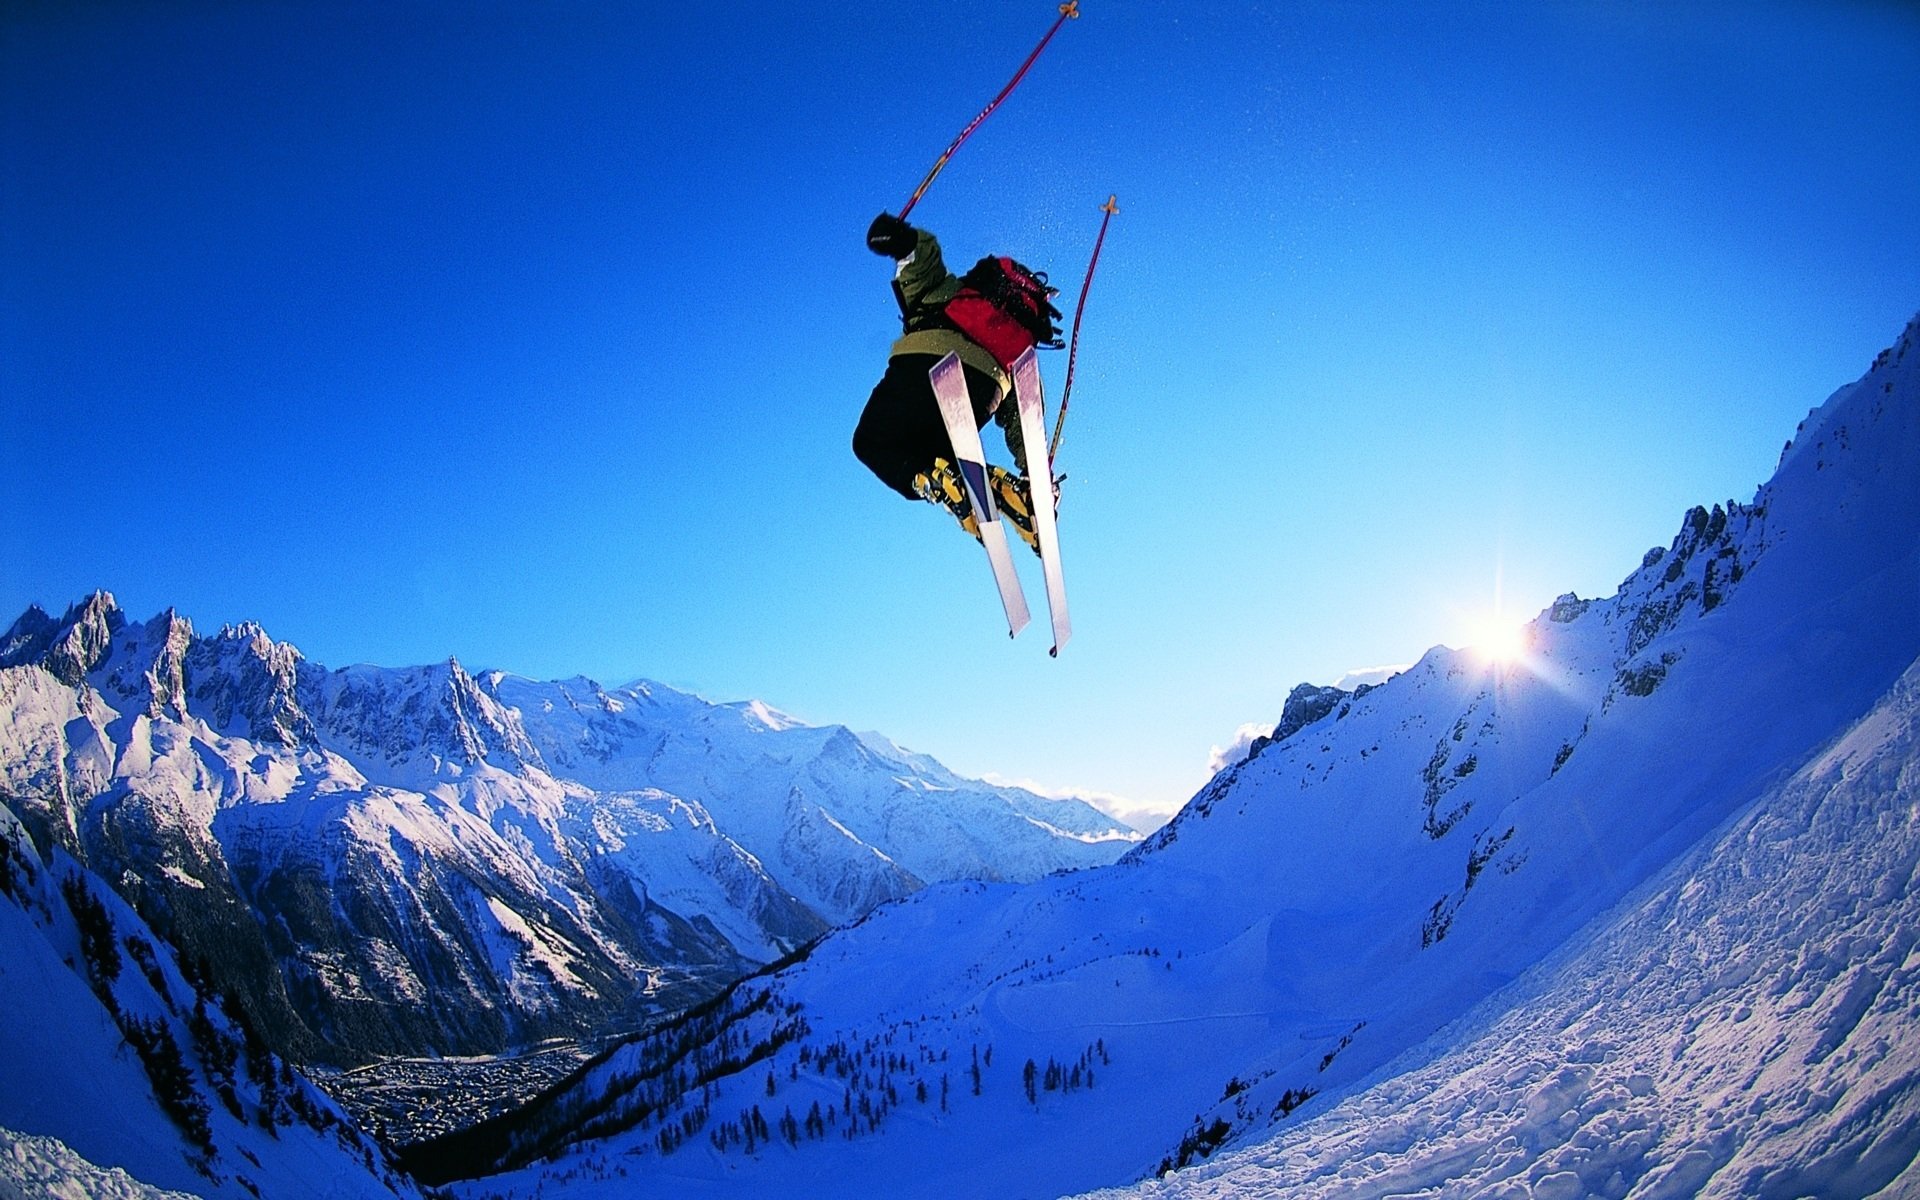 Фото skiing. Лыжник фрирайдер. Фрирайд горные лыжи. Красная Поляна горнолыжный курорт. Лыжи фрирайд фристайл.